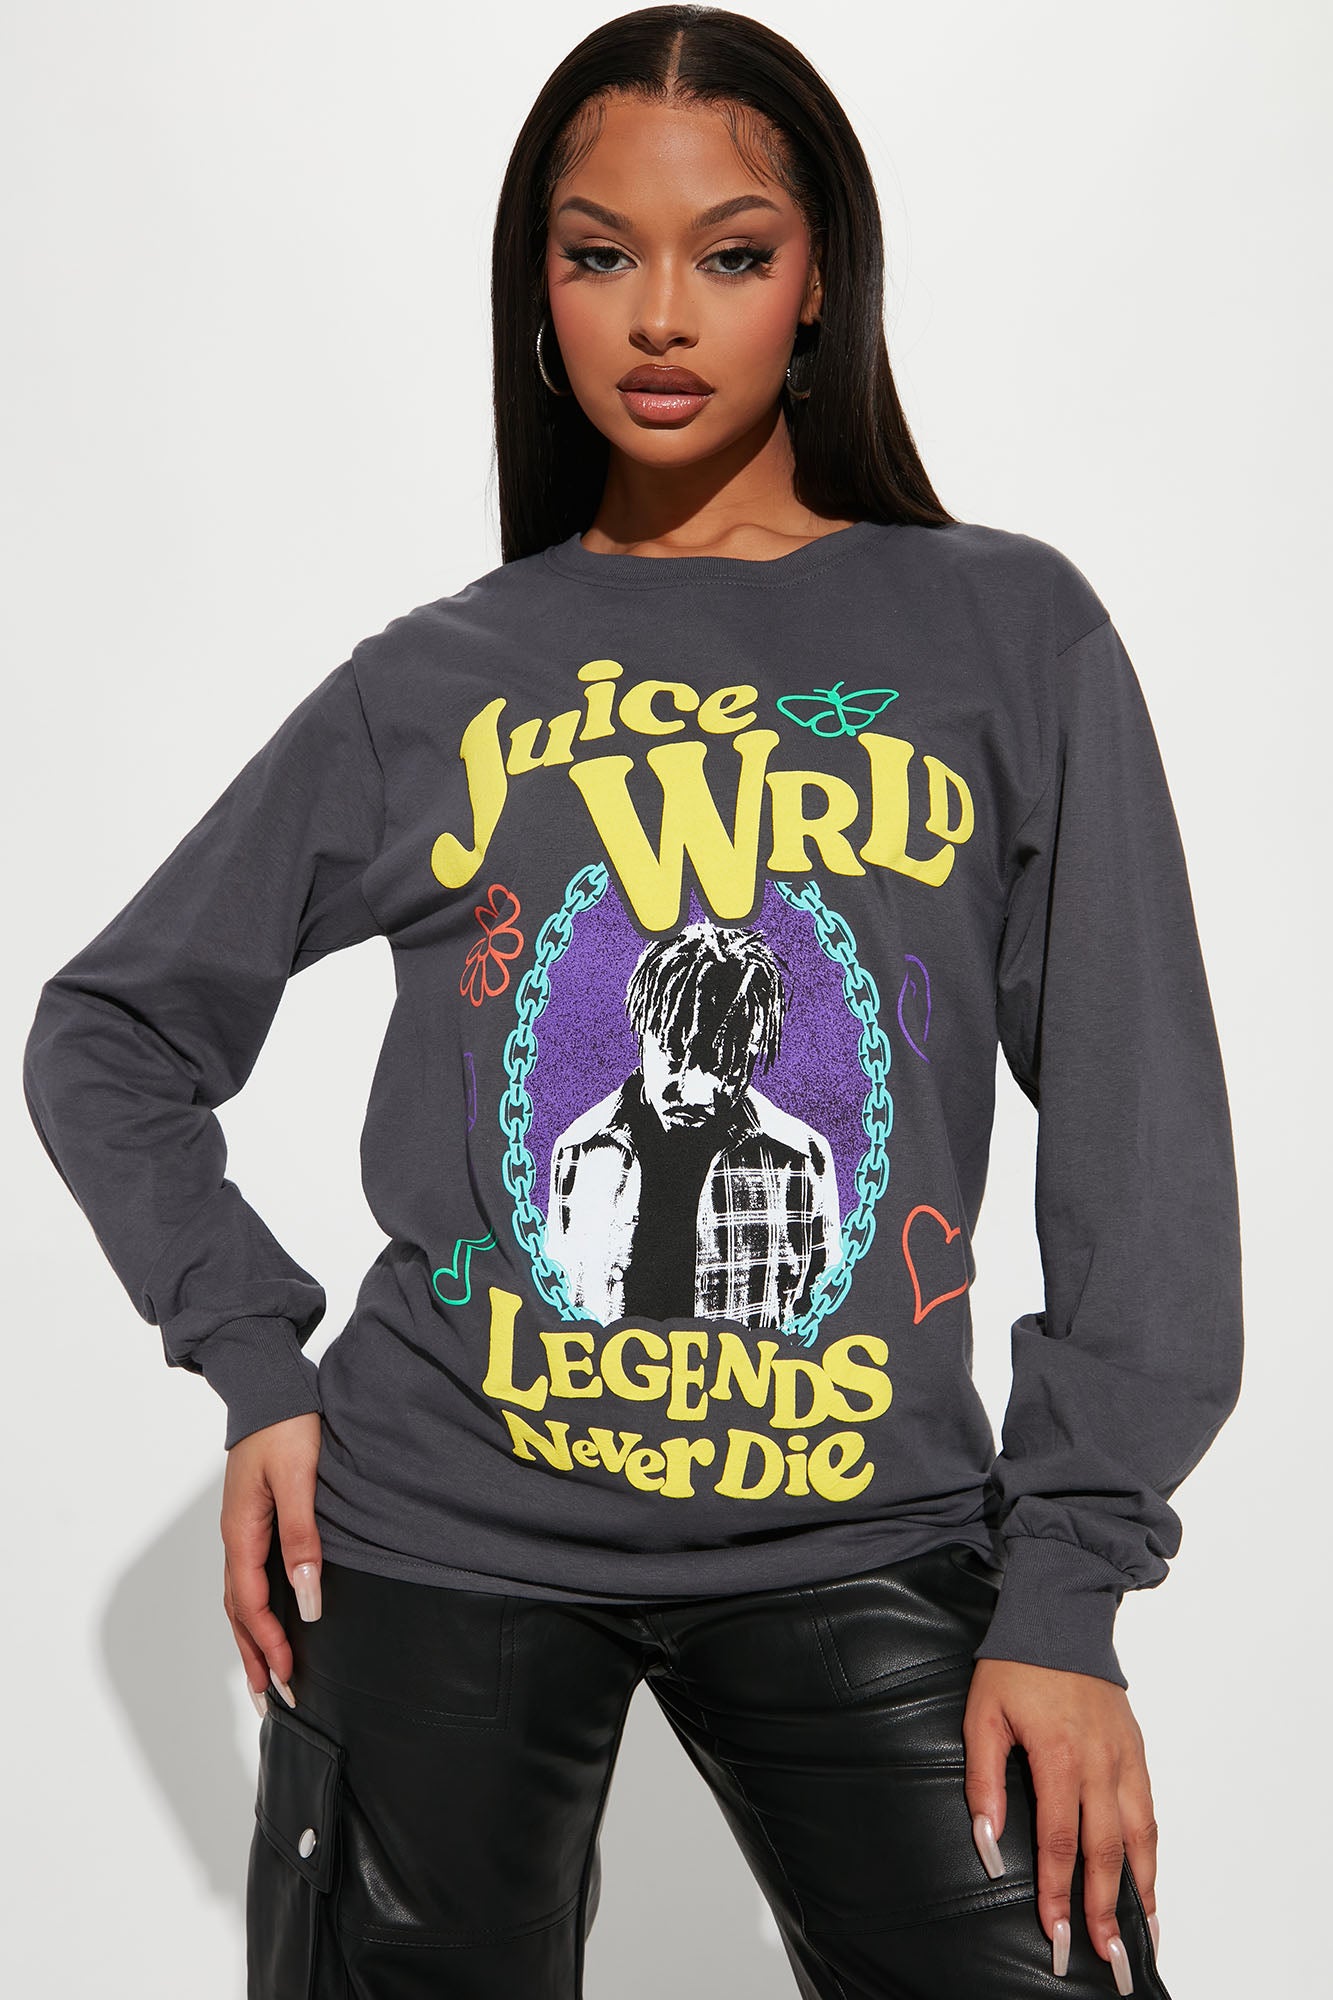 Legends Never Die Juice WRLD Jean Jacket Size Large